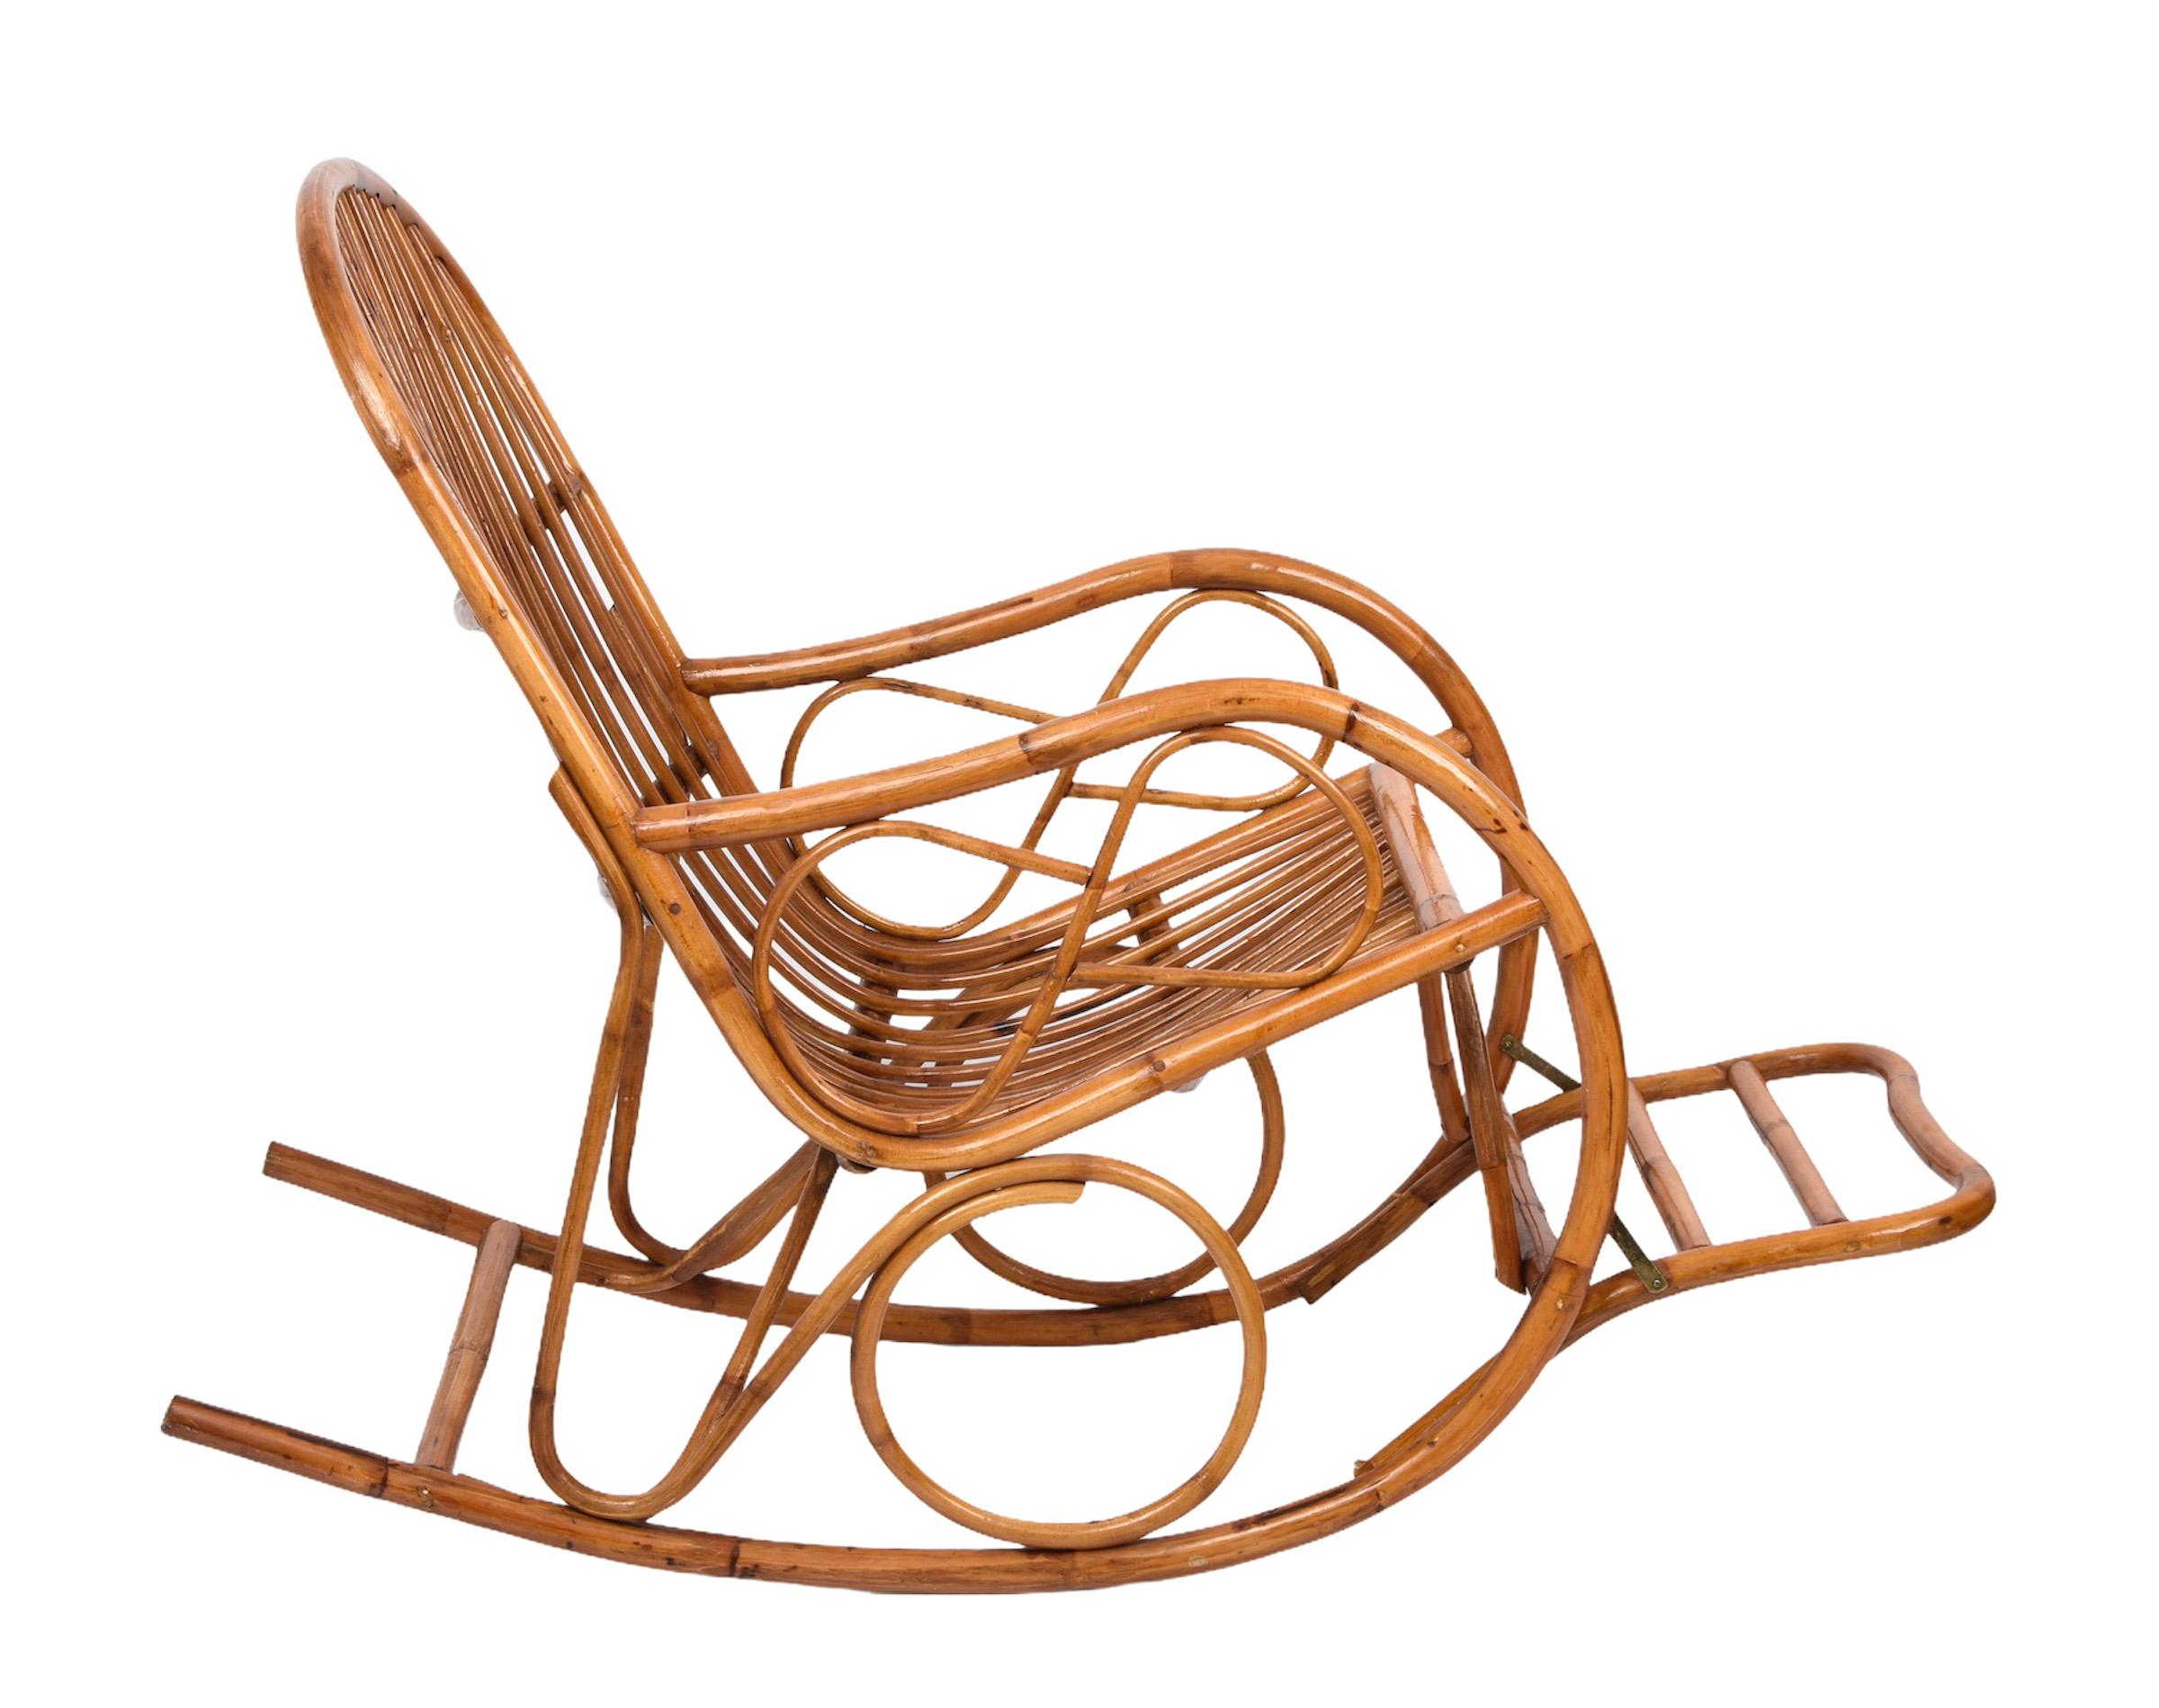 Eleganter französischer Riviera-Schaukelstuhl aus der Jahrhundertmitte mit Rattan- und Bambusfußhocker. Dieses fantastische Stück wurde in den 1970er Jahren in Italien entworfen und hergestellt.

Dieser Stuhl ist einzigartig, denn er hat perfekte